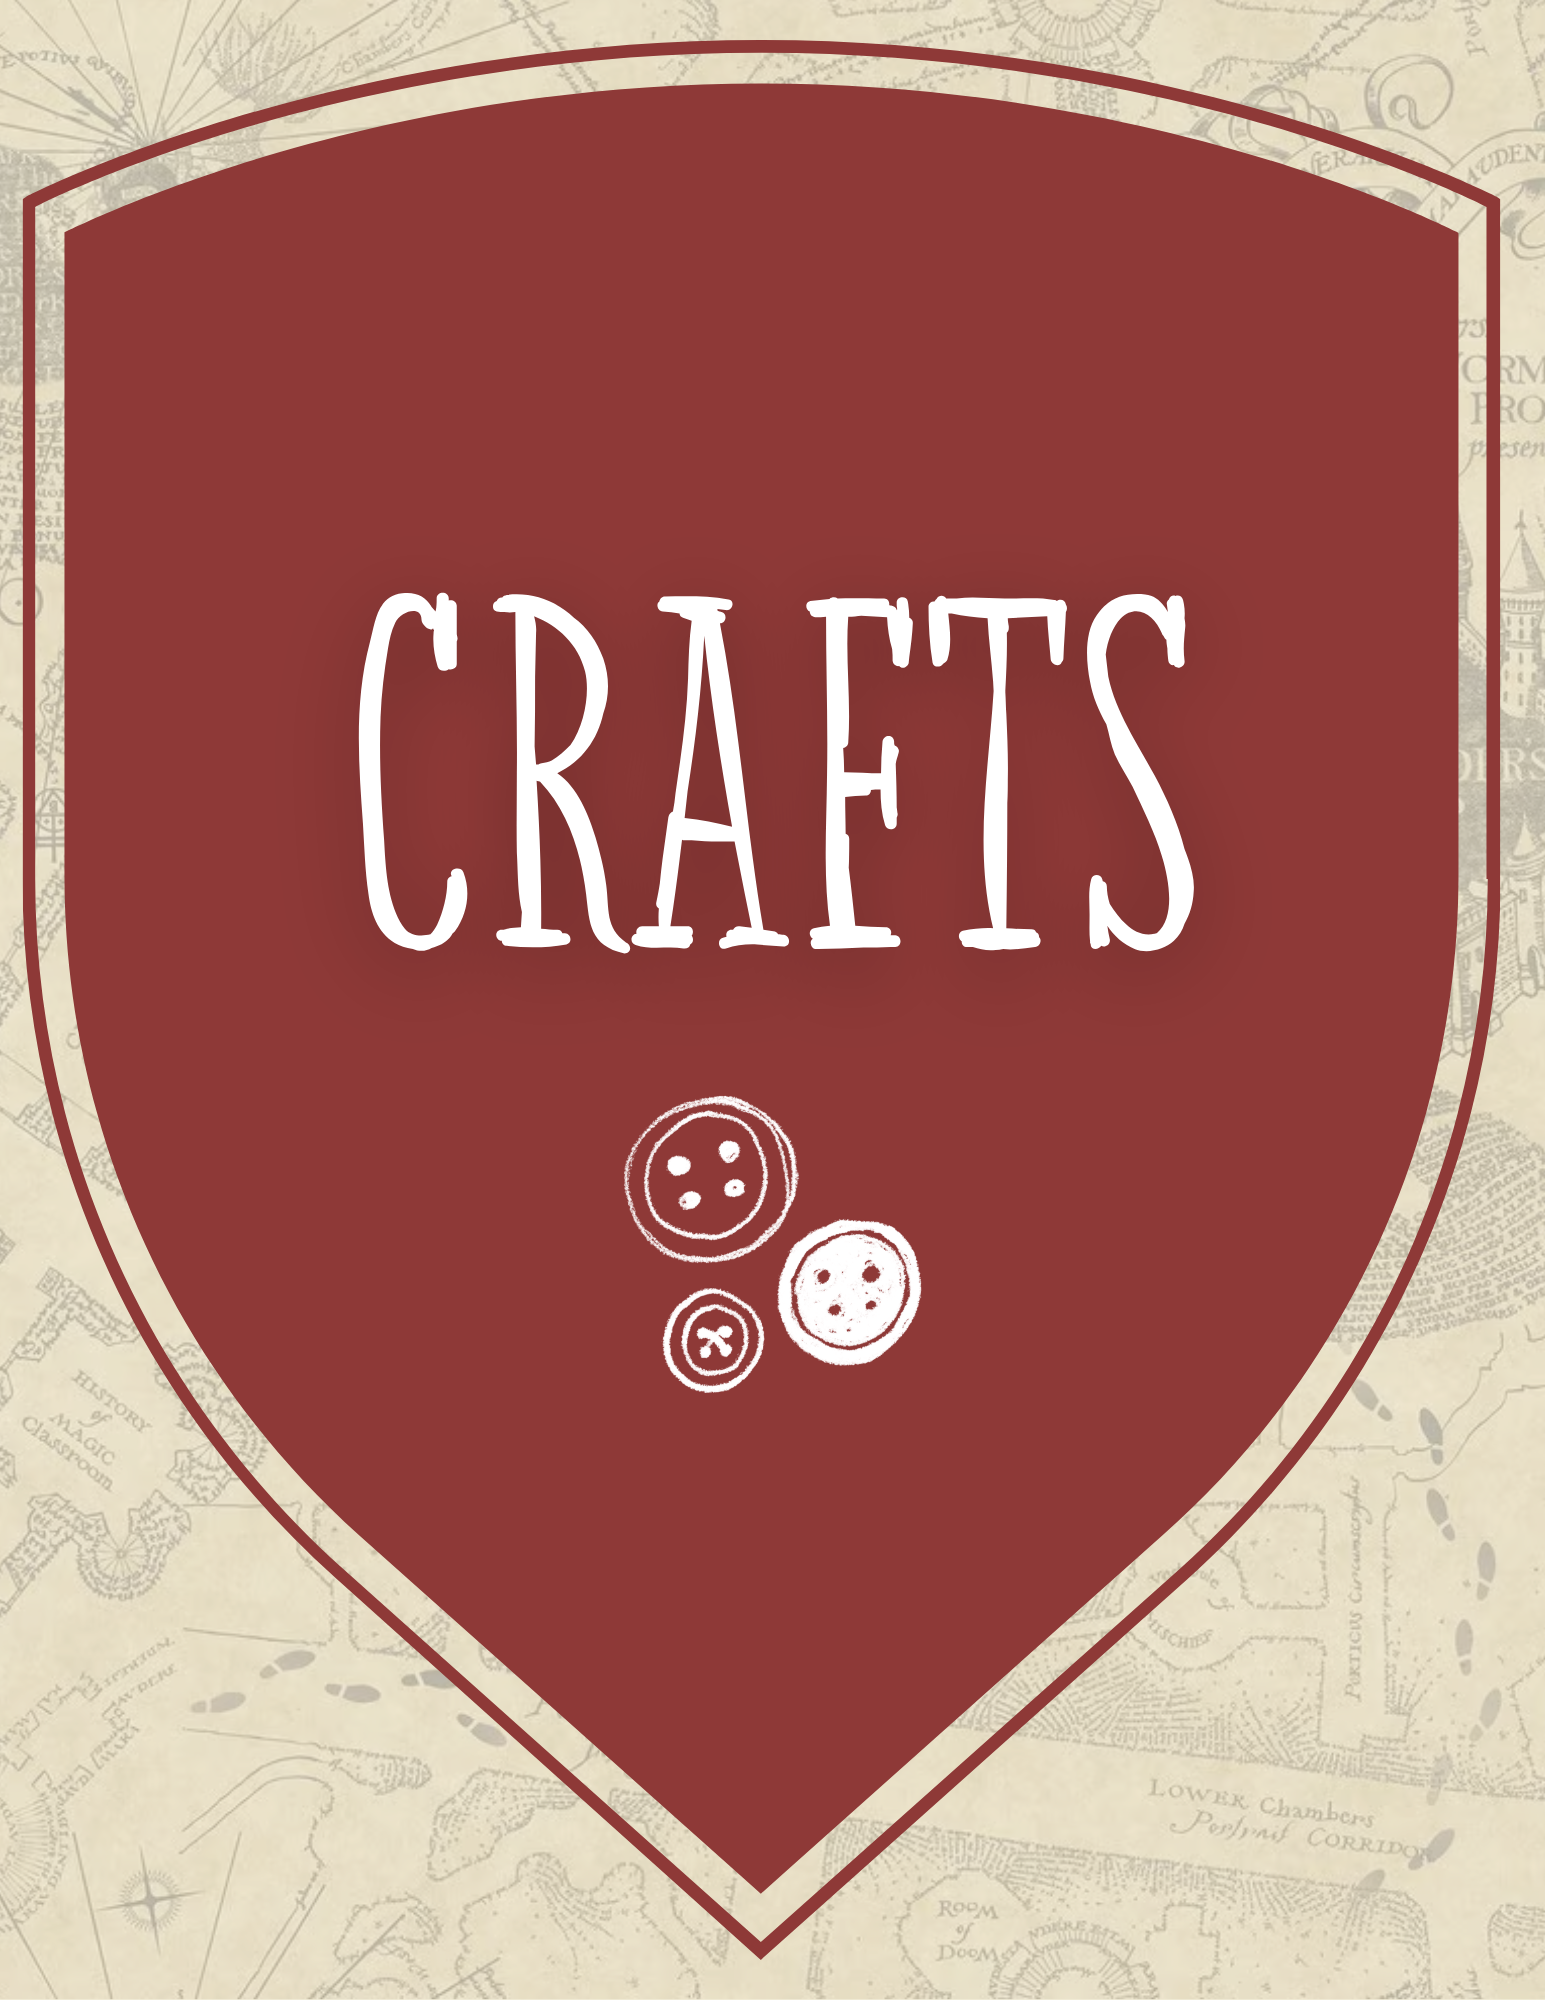 Banner titled "crafts"